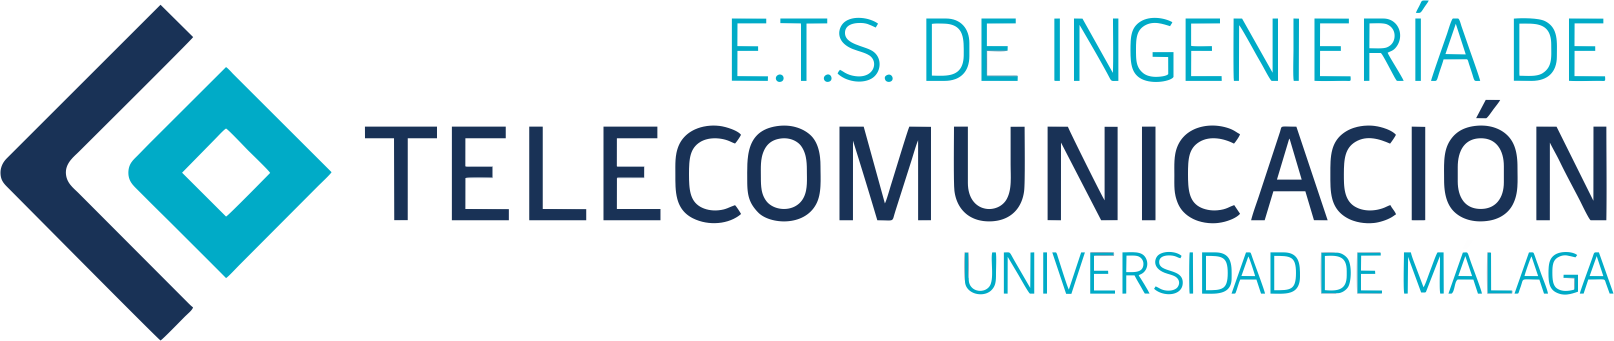 E.T.S. Ingeniería Telecomunicación